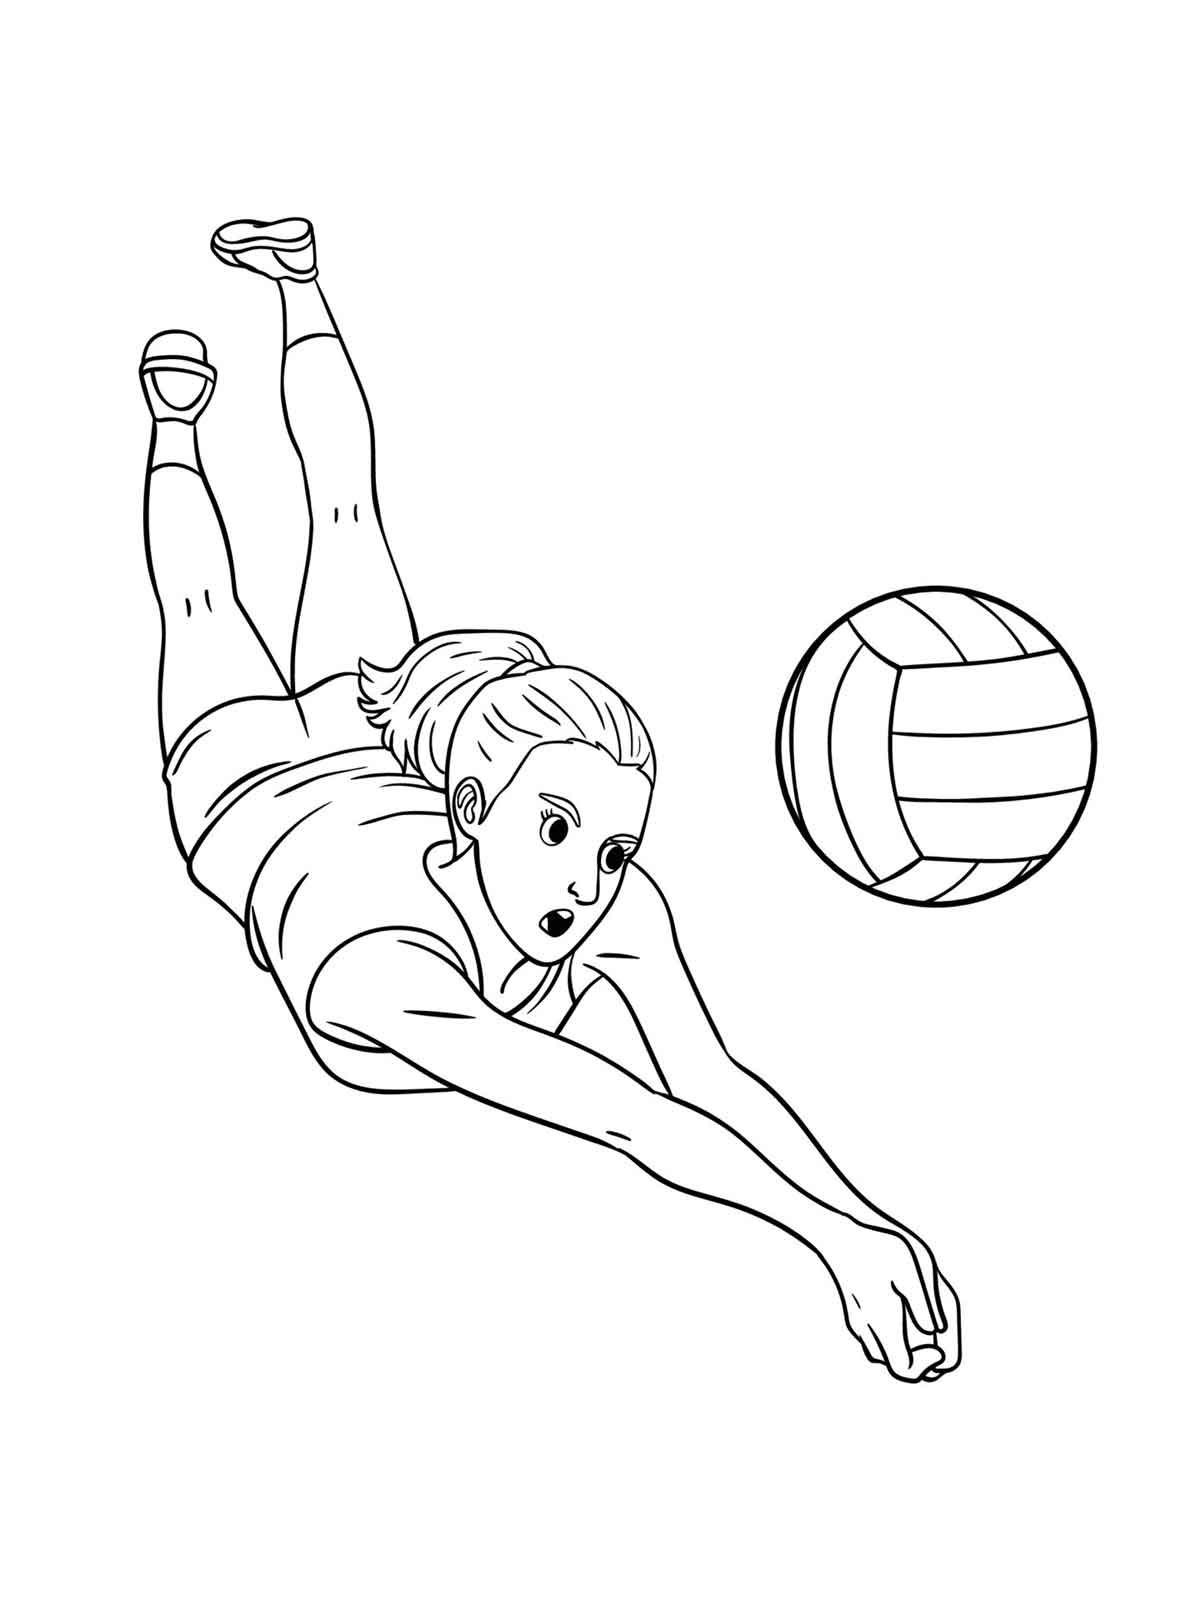 Рисунок на тему волейбол простой